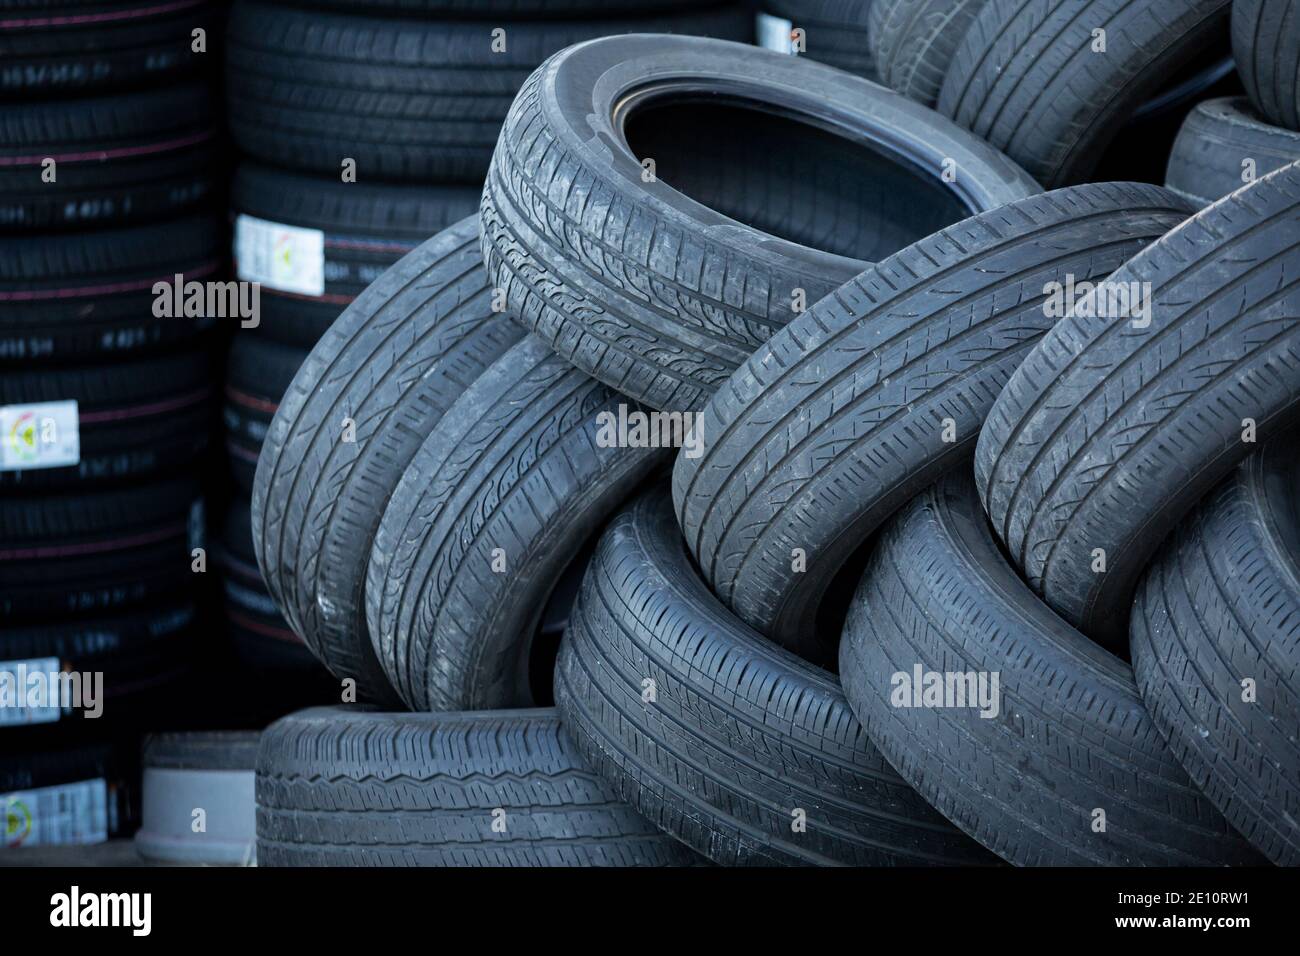 Pila de neumáticos usados sobre un fondo de neumáticos nuevos Foto de stock